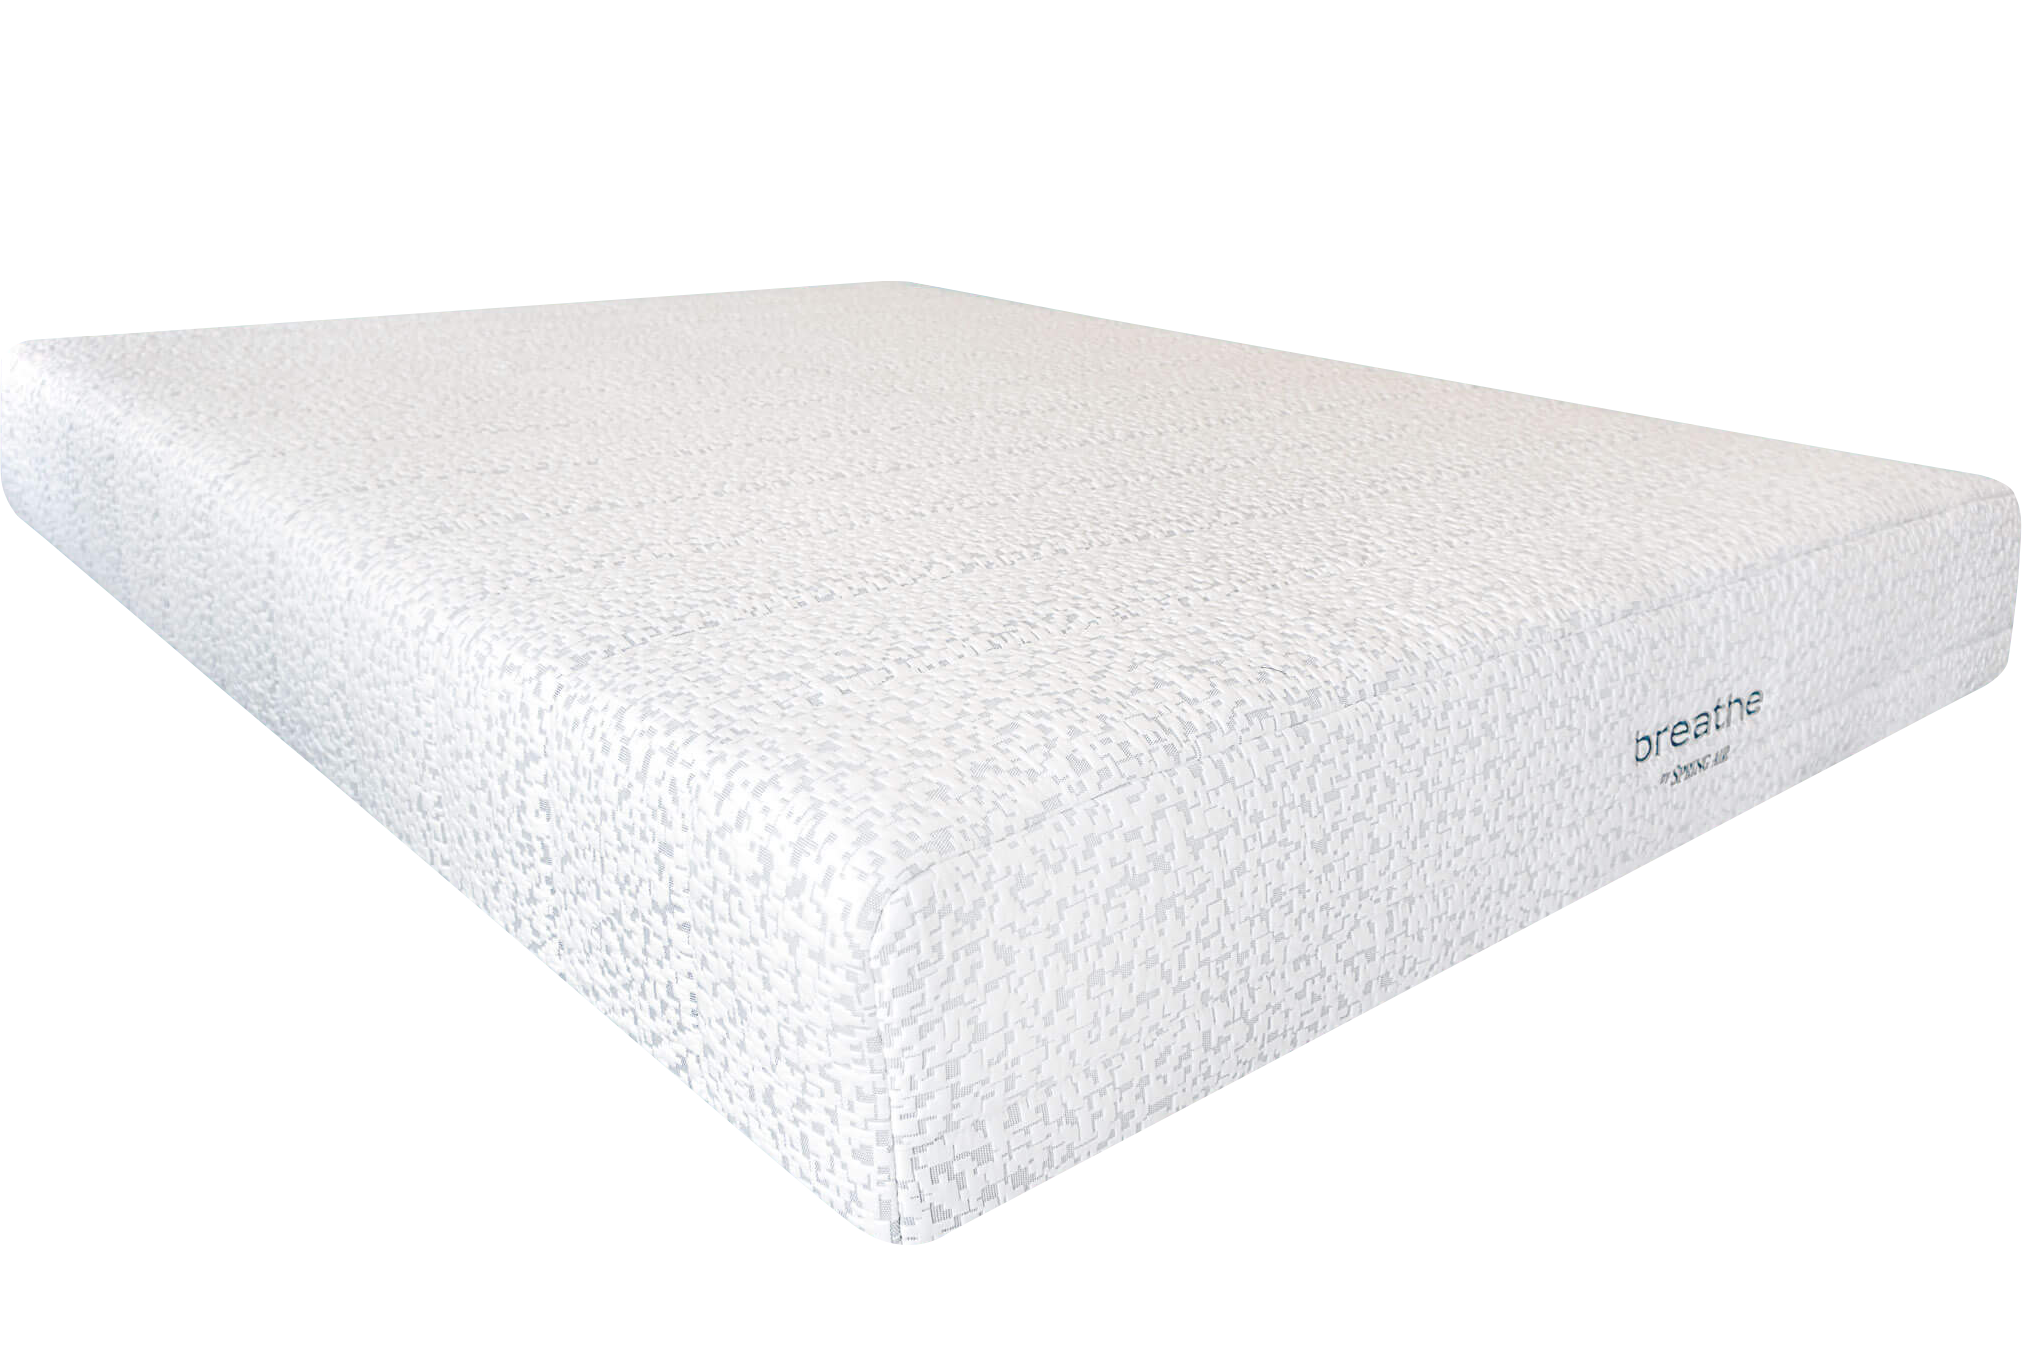 memory foam mattress feels like one side isnlower